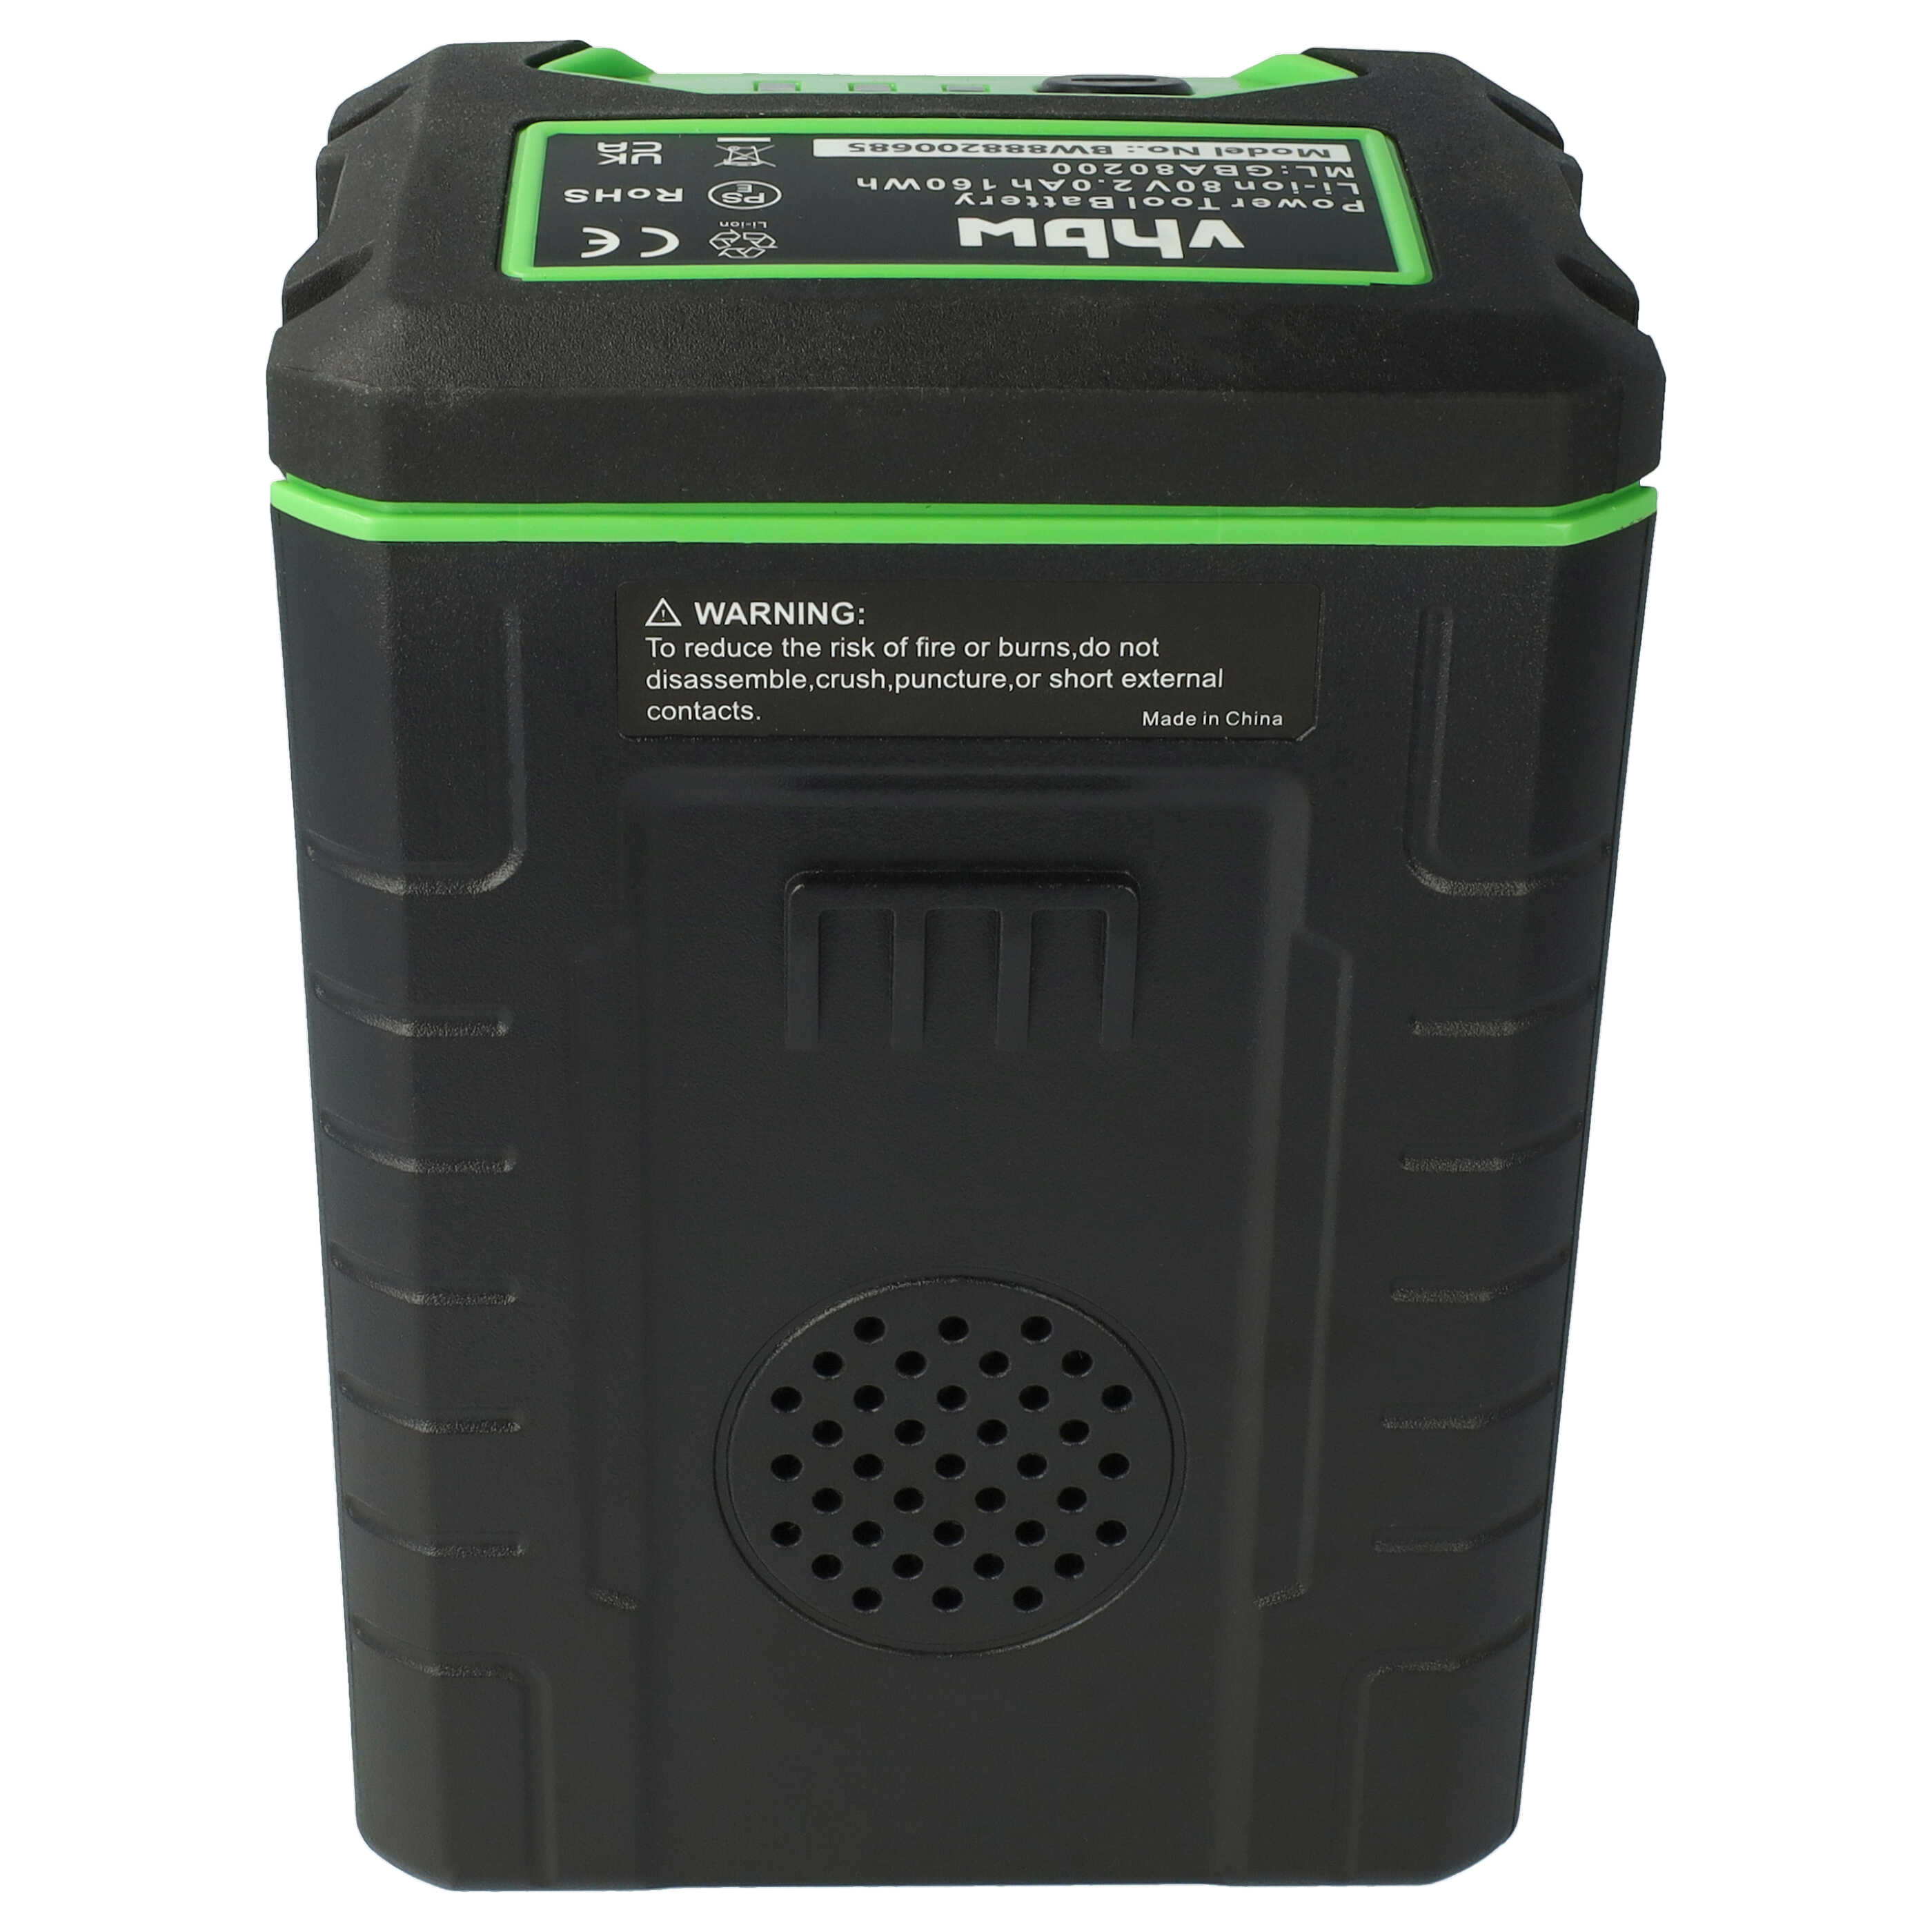 Batterie remplace Remarc 82V430G pour outil de jardinage - 2500mAh 80V Li-ion